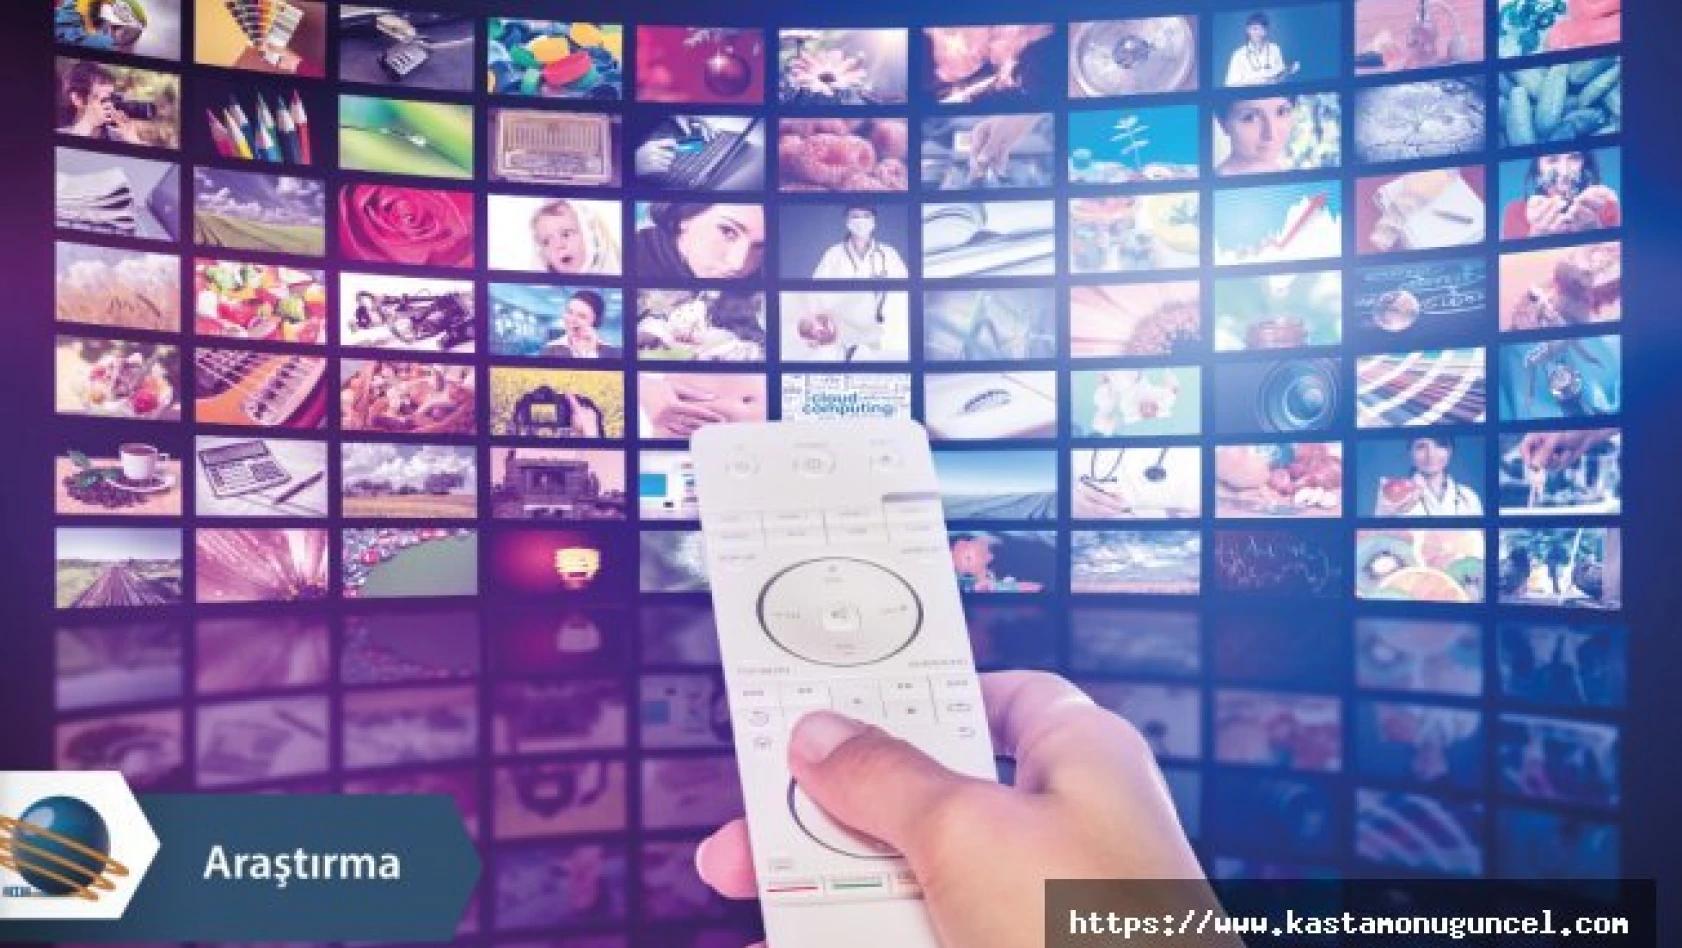 Yılın en çok konuşulan televizyon kanalları belli oldu!